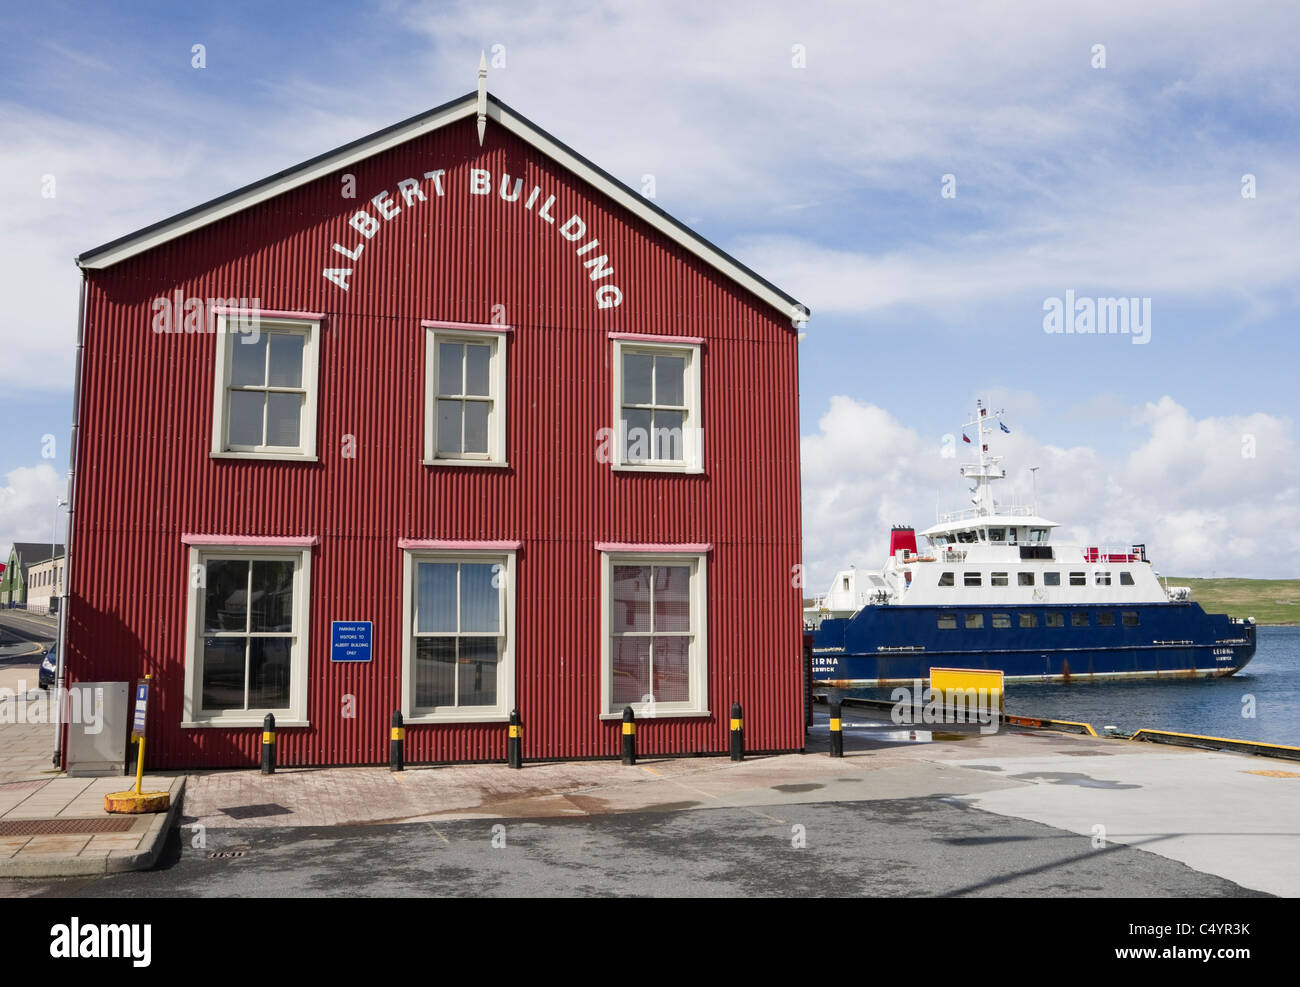 L'Administration portuaire de bâtiment Albert bureaux régionaux sur le quai avec Noss au-delà de ferry. Lerwick, Shetland, Scotland, UK. Banque D'Images